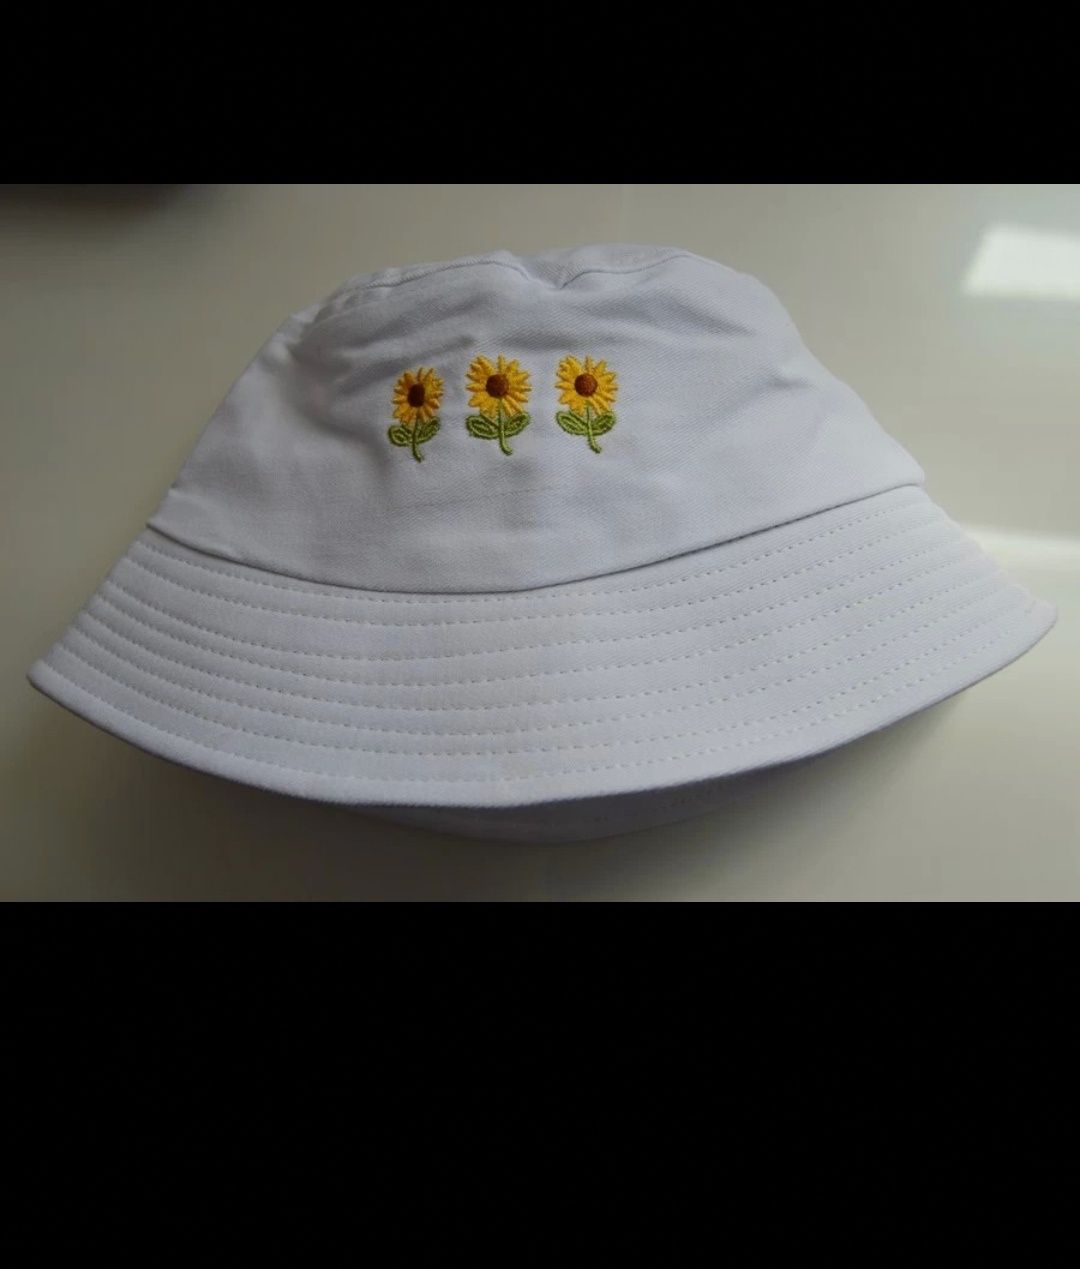 Nowy Bucket hat kapelusz biały w żółte kwiaty